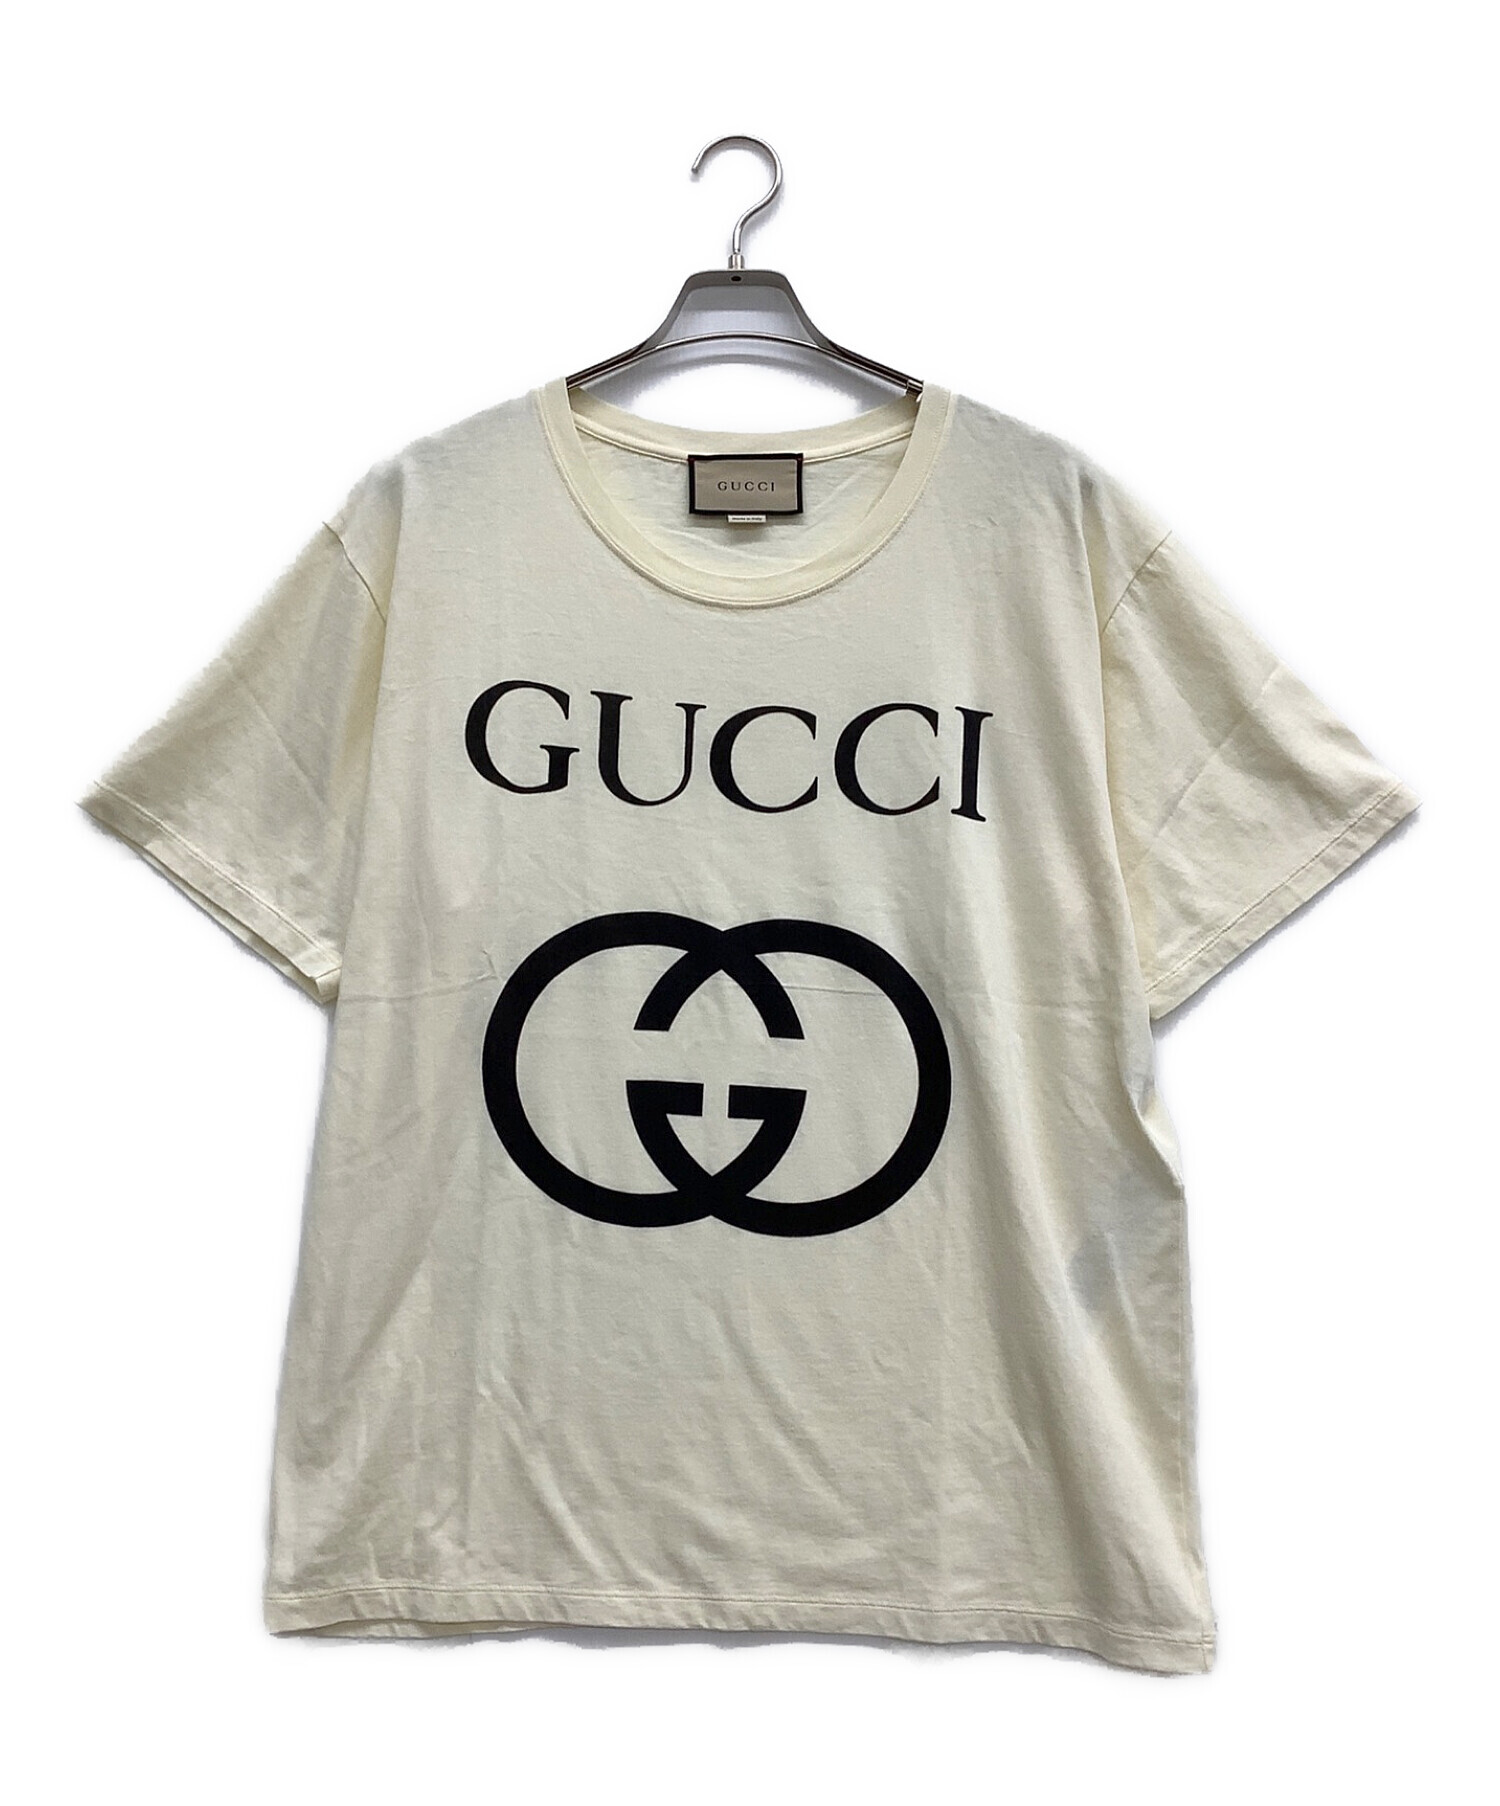 グッチ】Gucci メンズ インターロッキング ロゴプリント Tシャツ